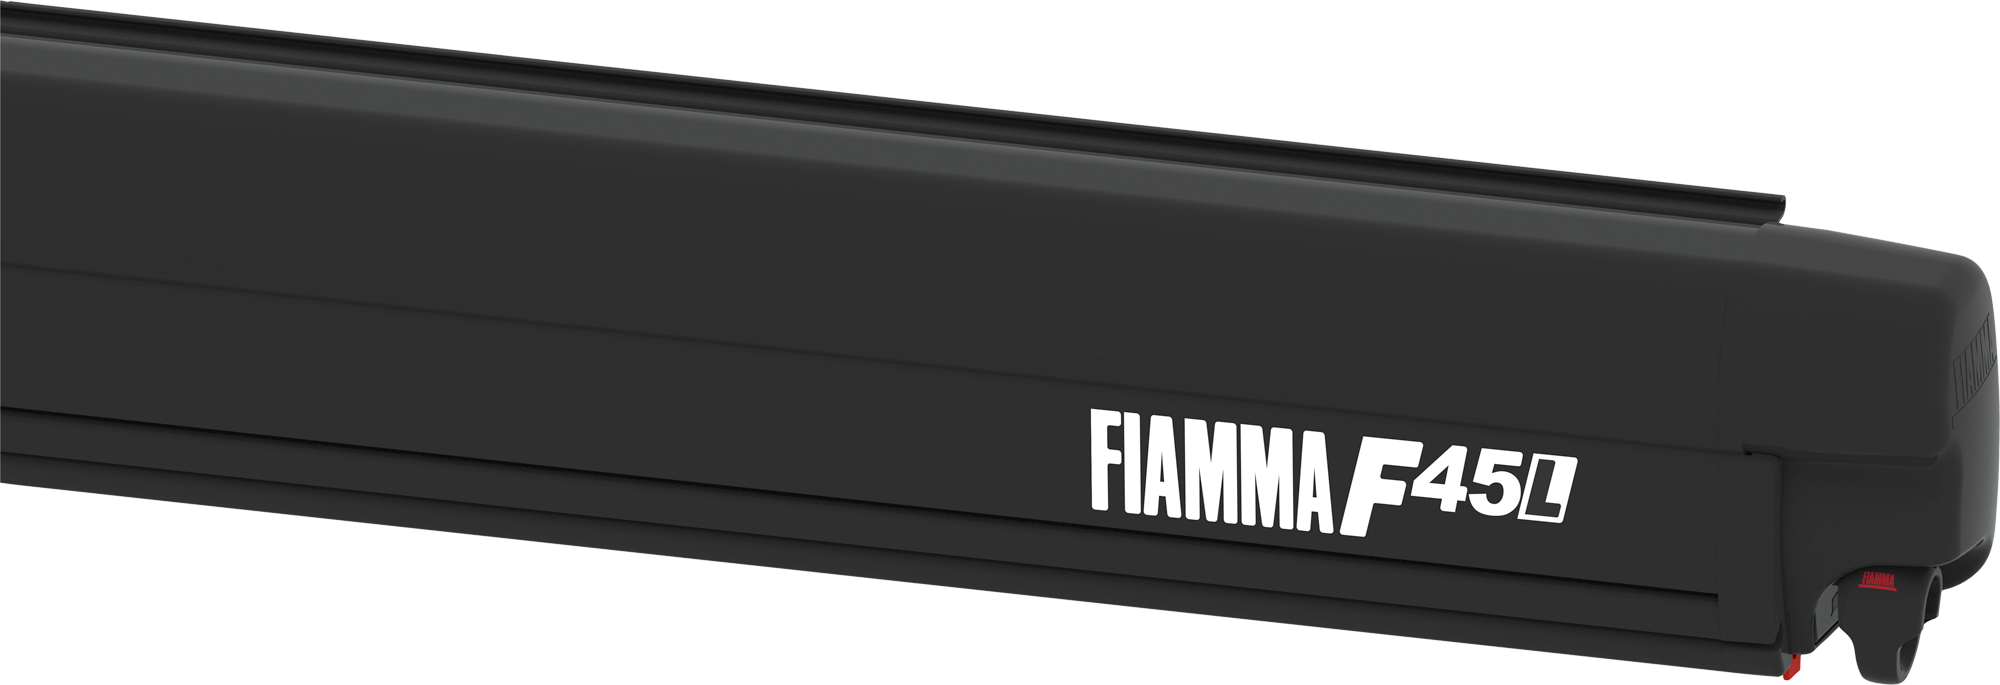 Fiamma F45L 500 Markise Gehäusefarbe Deep Black Tuchfarbe Royal Grey 500 cm